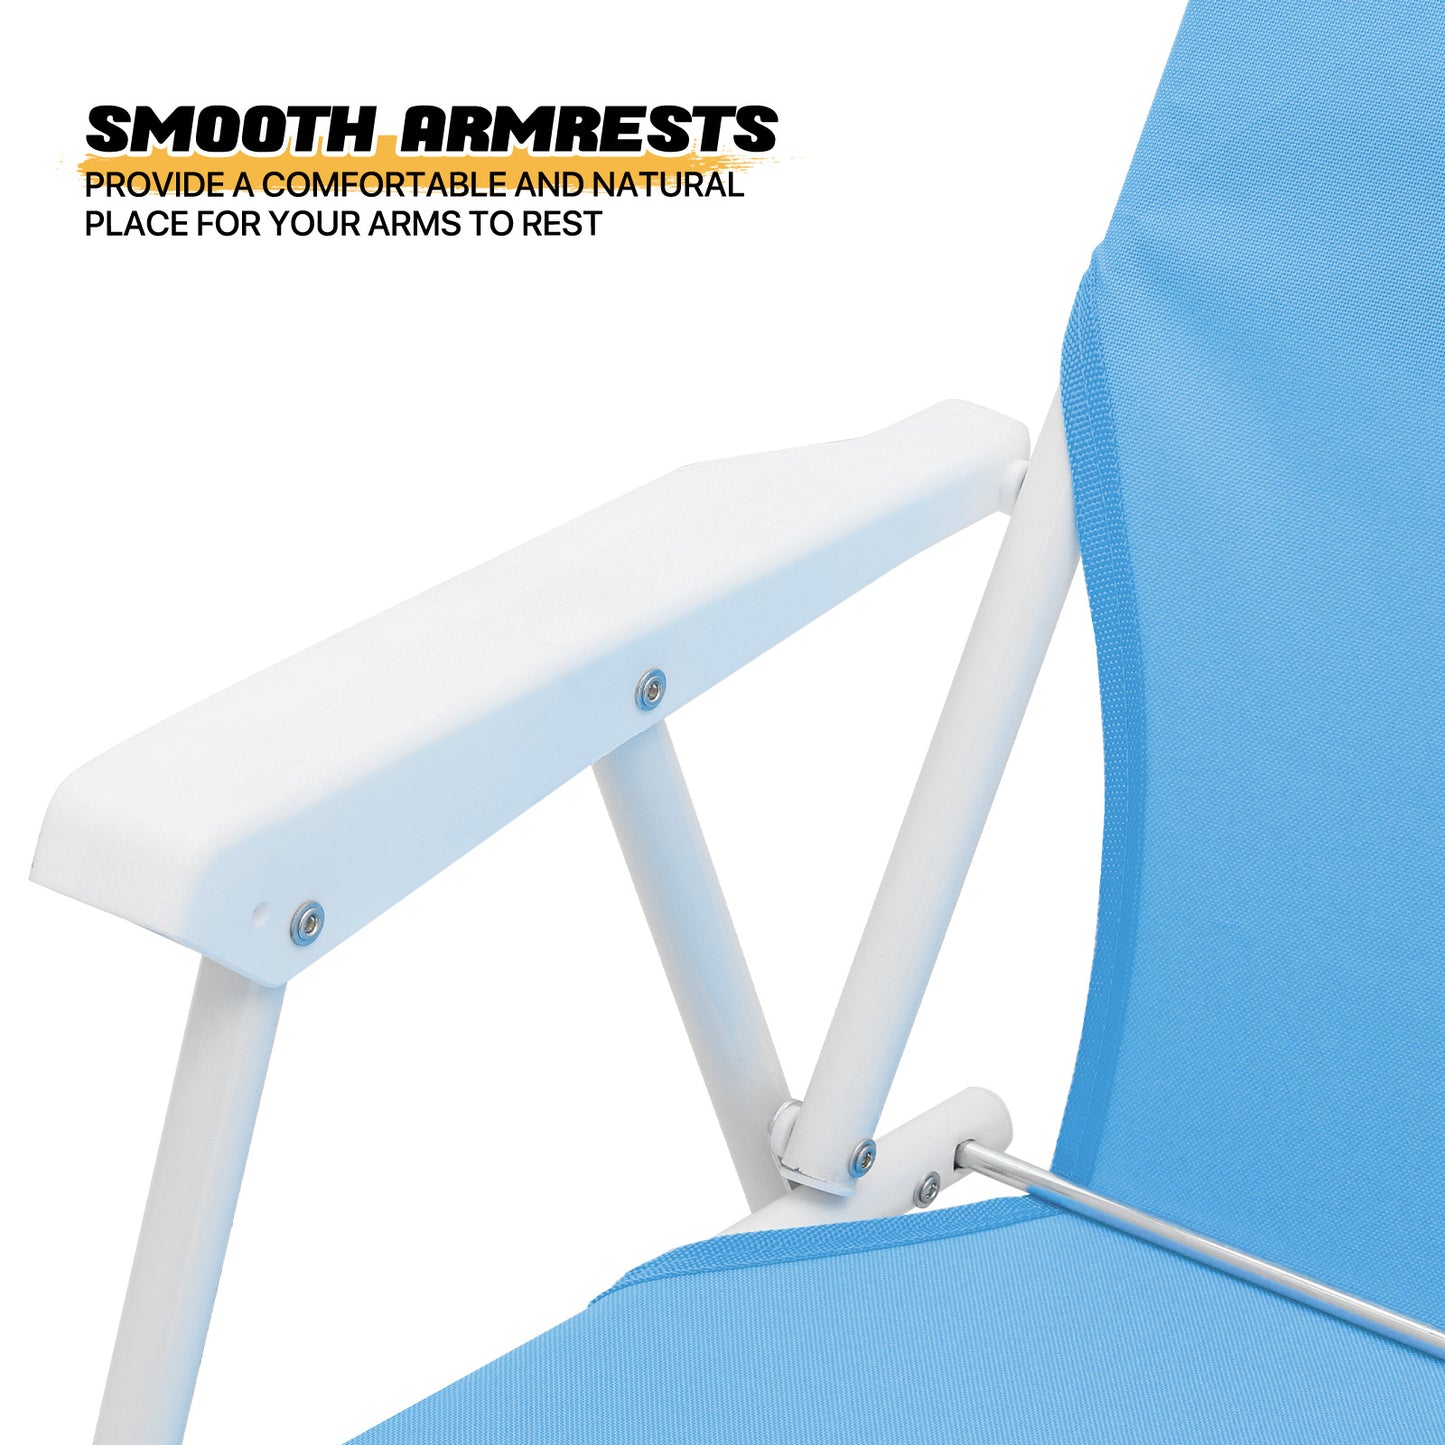 Beach Chair - Oxford Fabric - Steel Tube - 2P